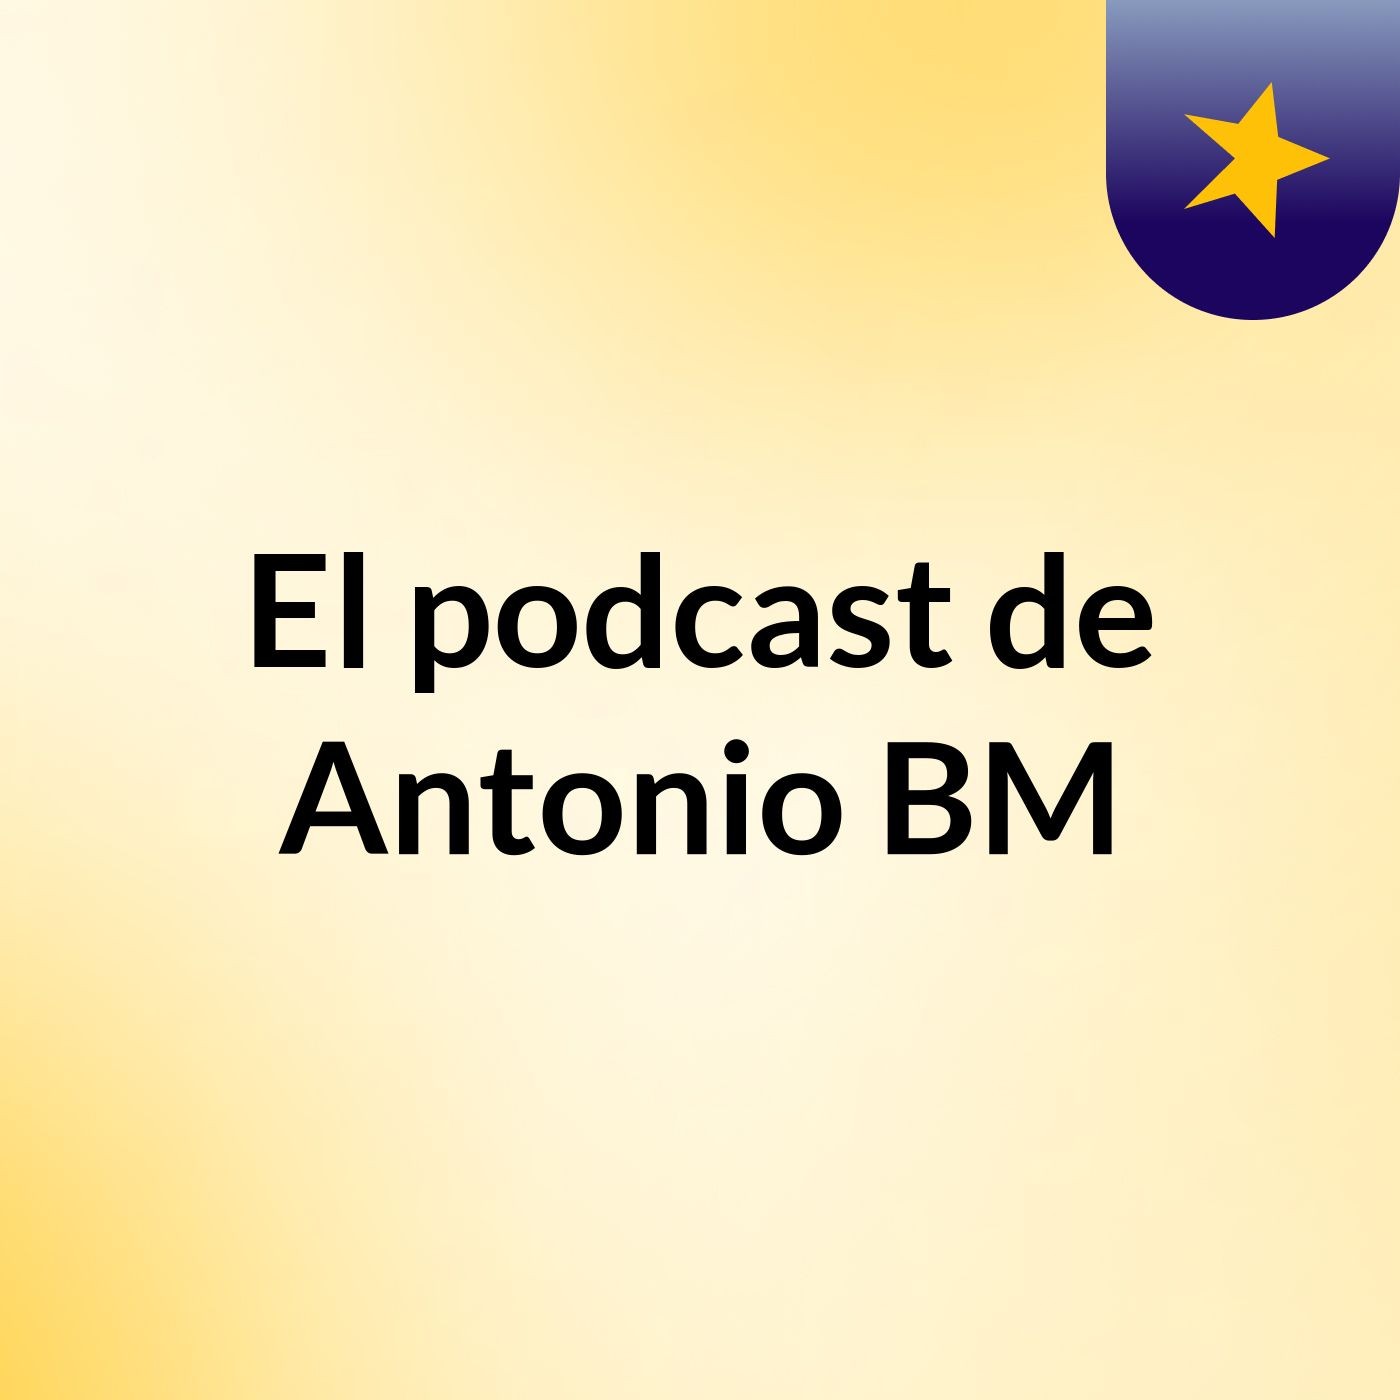 El podcast de Antonio BM